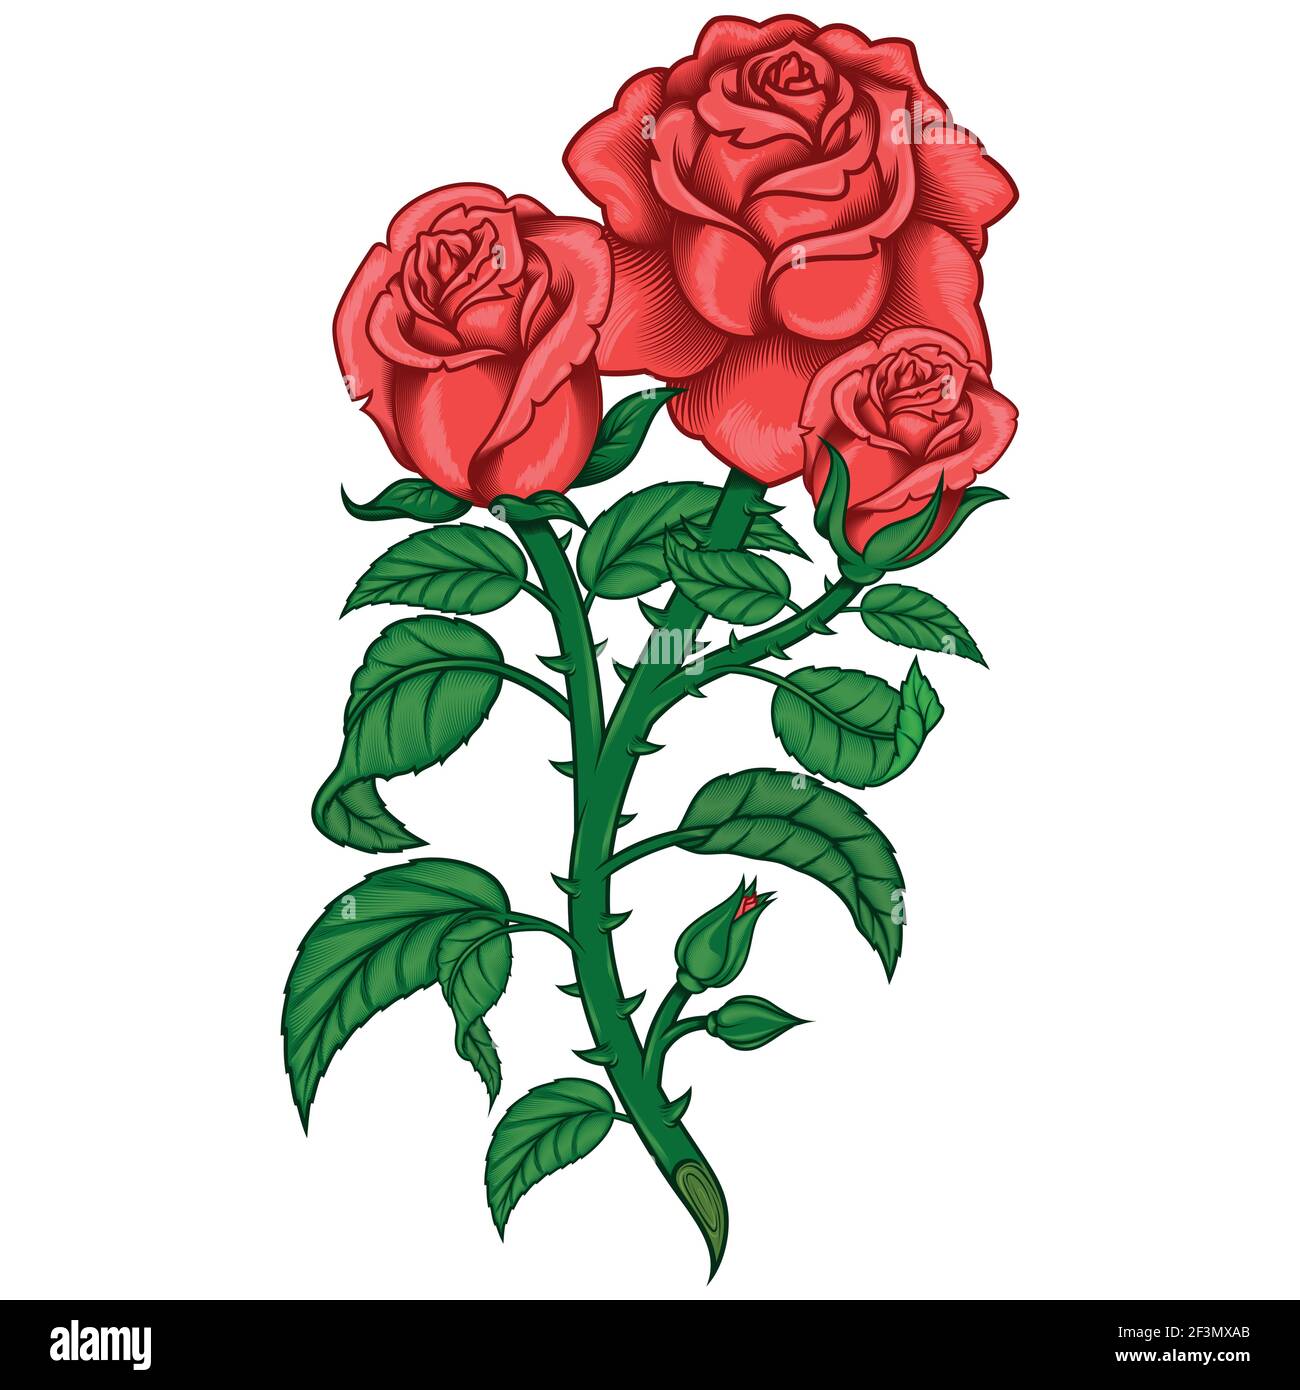 Dessin vectoriel d'un bouquet de roses, avec tige de feuilles et épines, le tout sur fond blanc Illustration de Vecteur